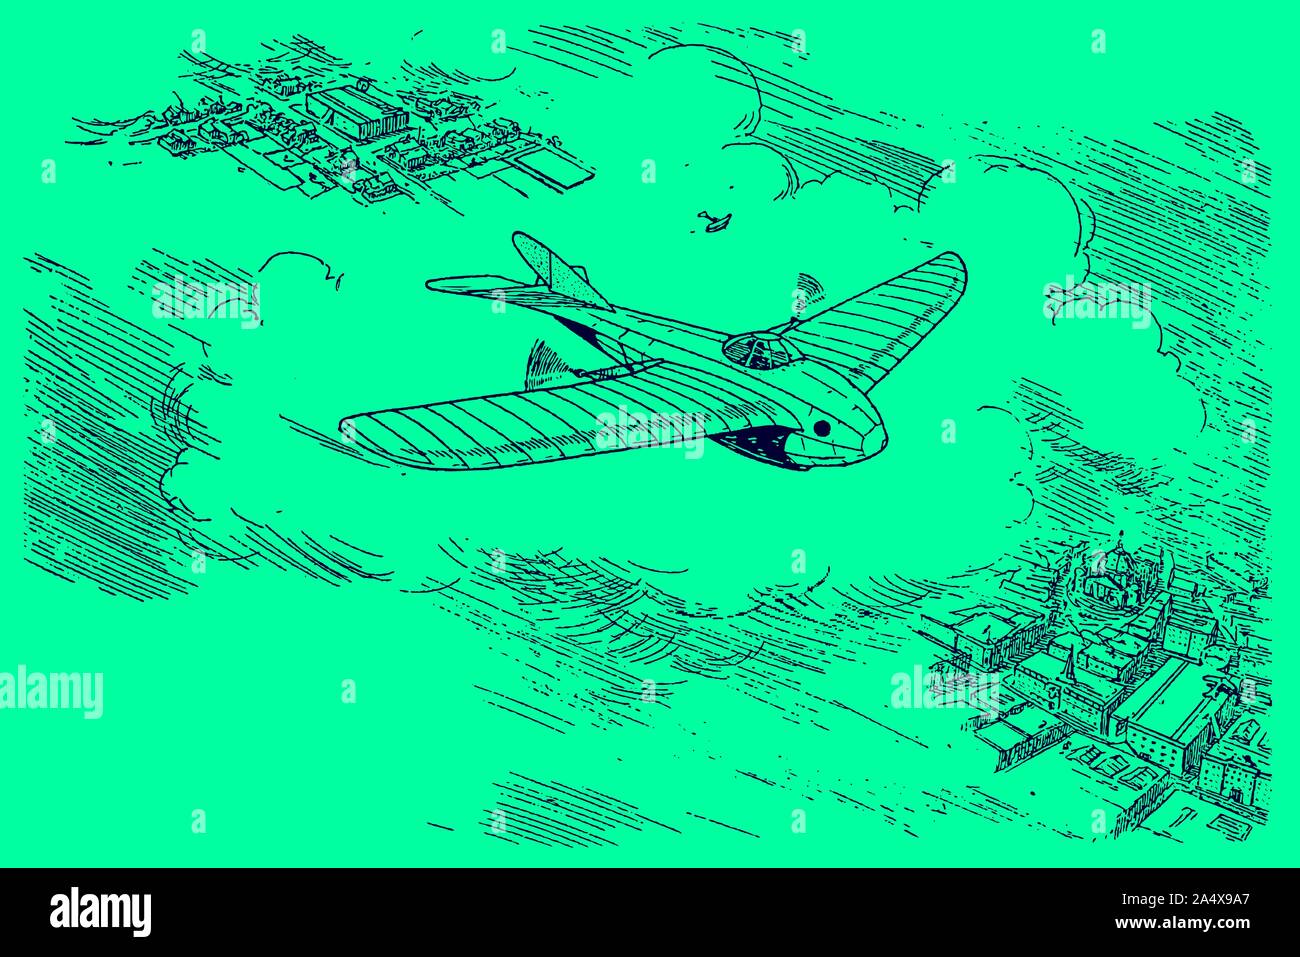 Étude futuristes du début du xxe siècle d'un monoplan avion volant au-dessus d'une ville à haute altitude. Illustration sur un fond vert. Modifiable Illustration de Vecteur